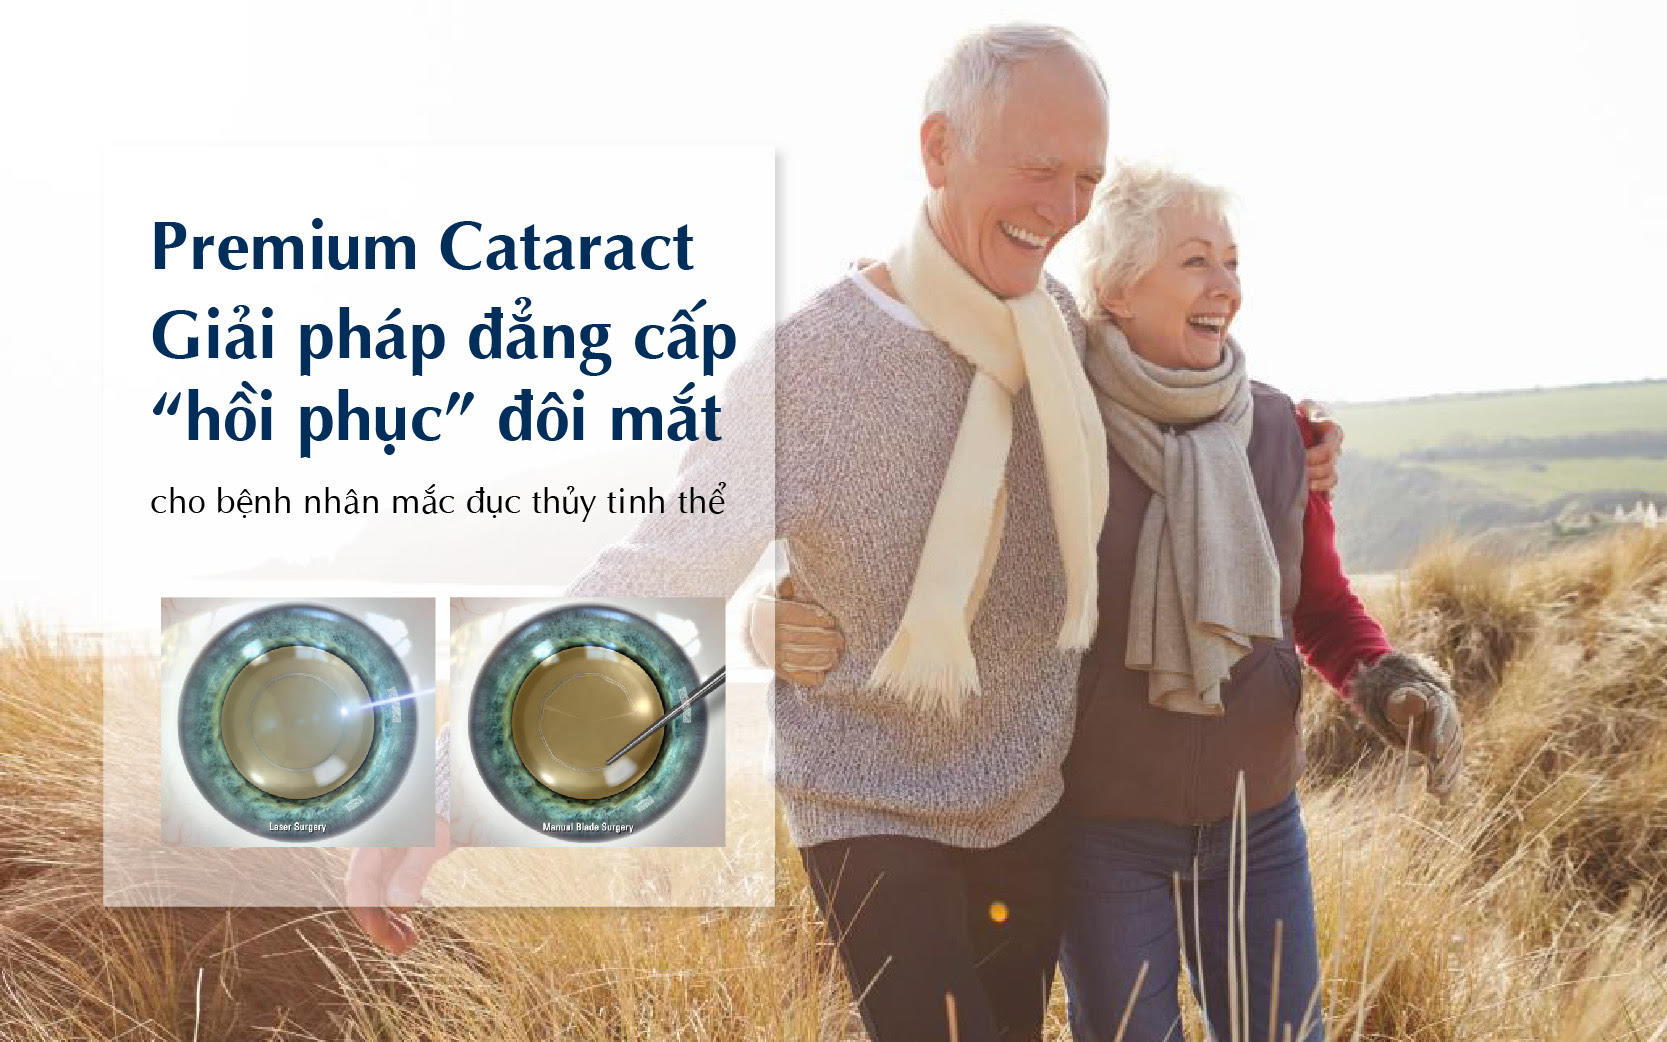 Premium Cataract - Giải pháp đẳng cấp "hồi phục” đôi mắt cho bệnh nhân mắc đục thủy tinh thể - 1